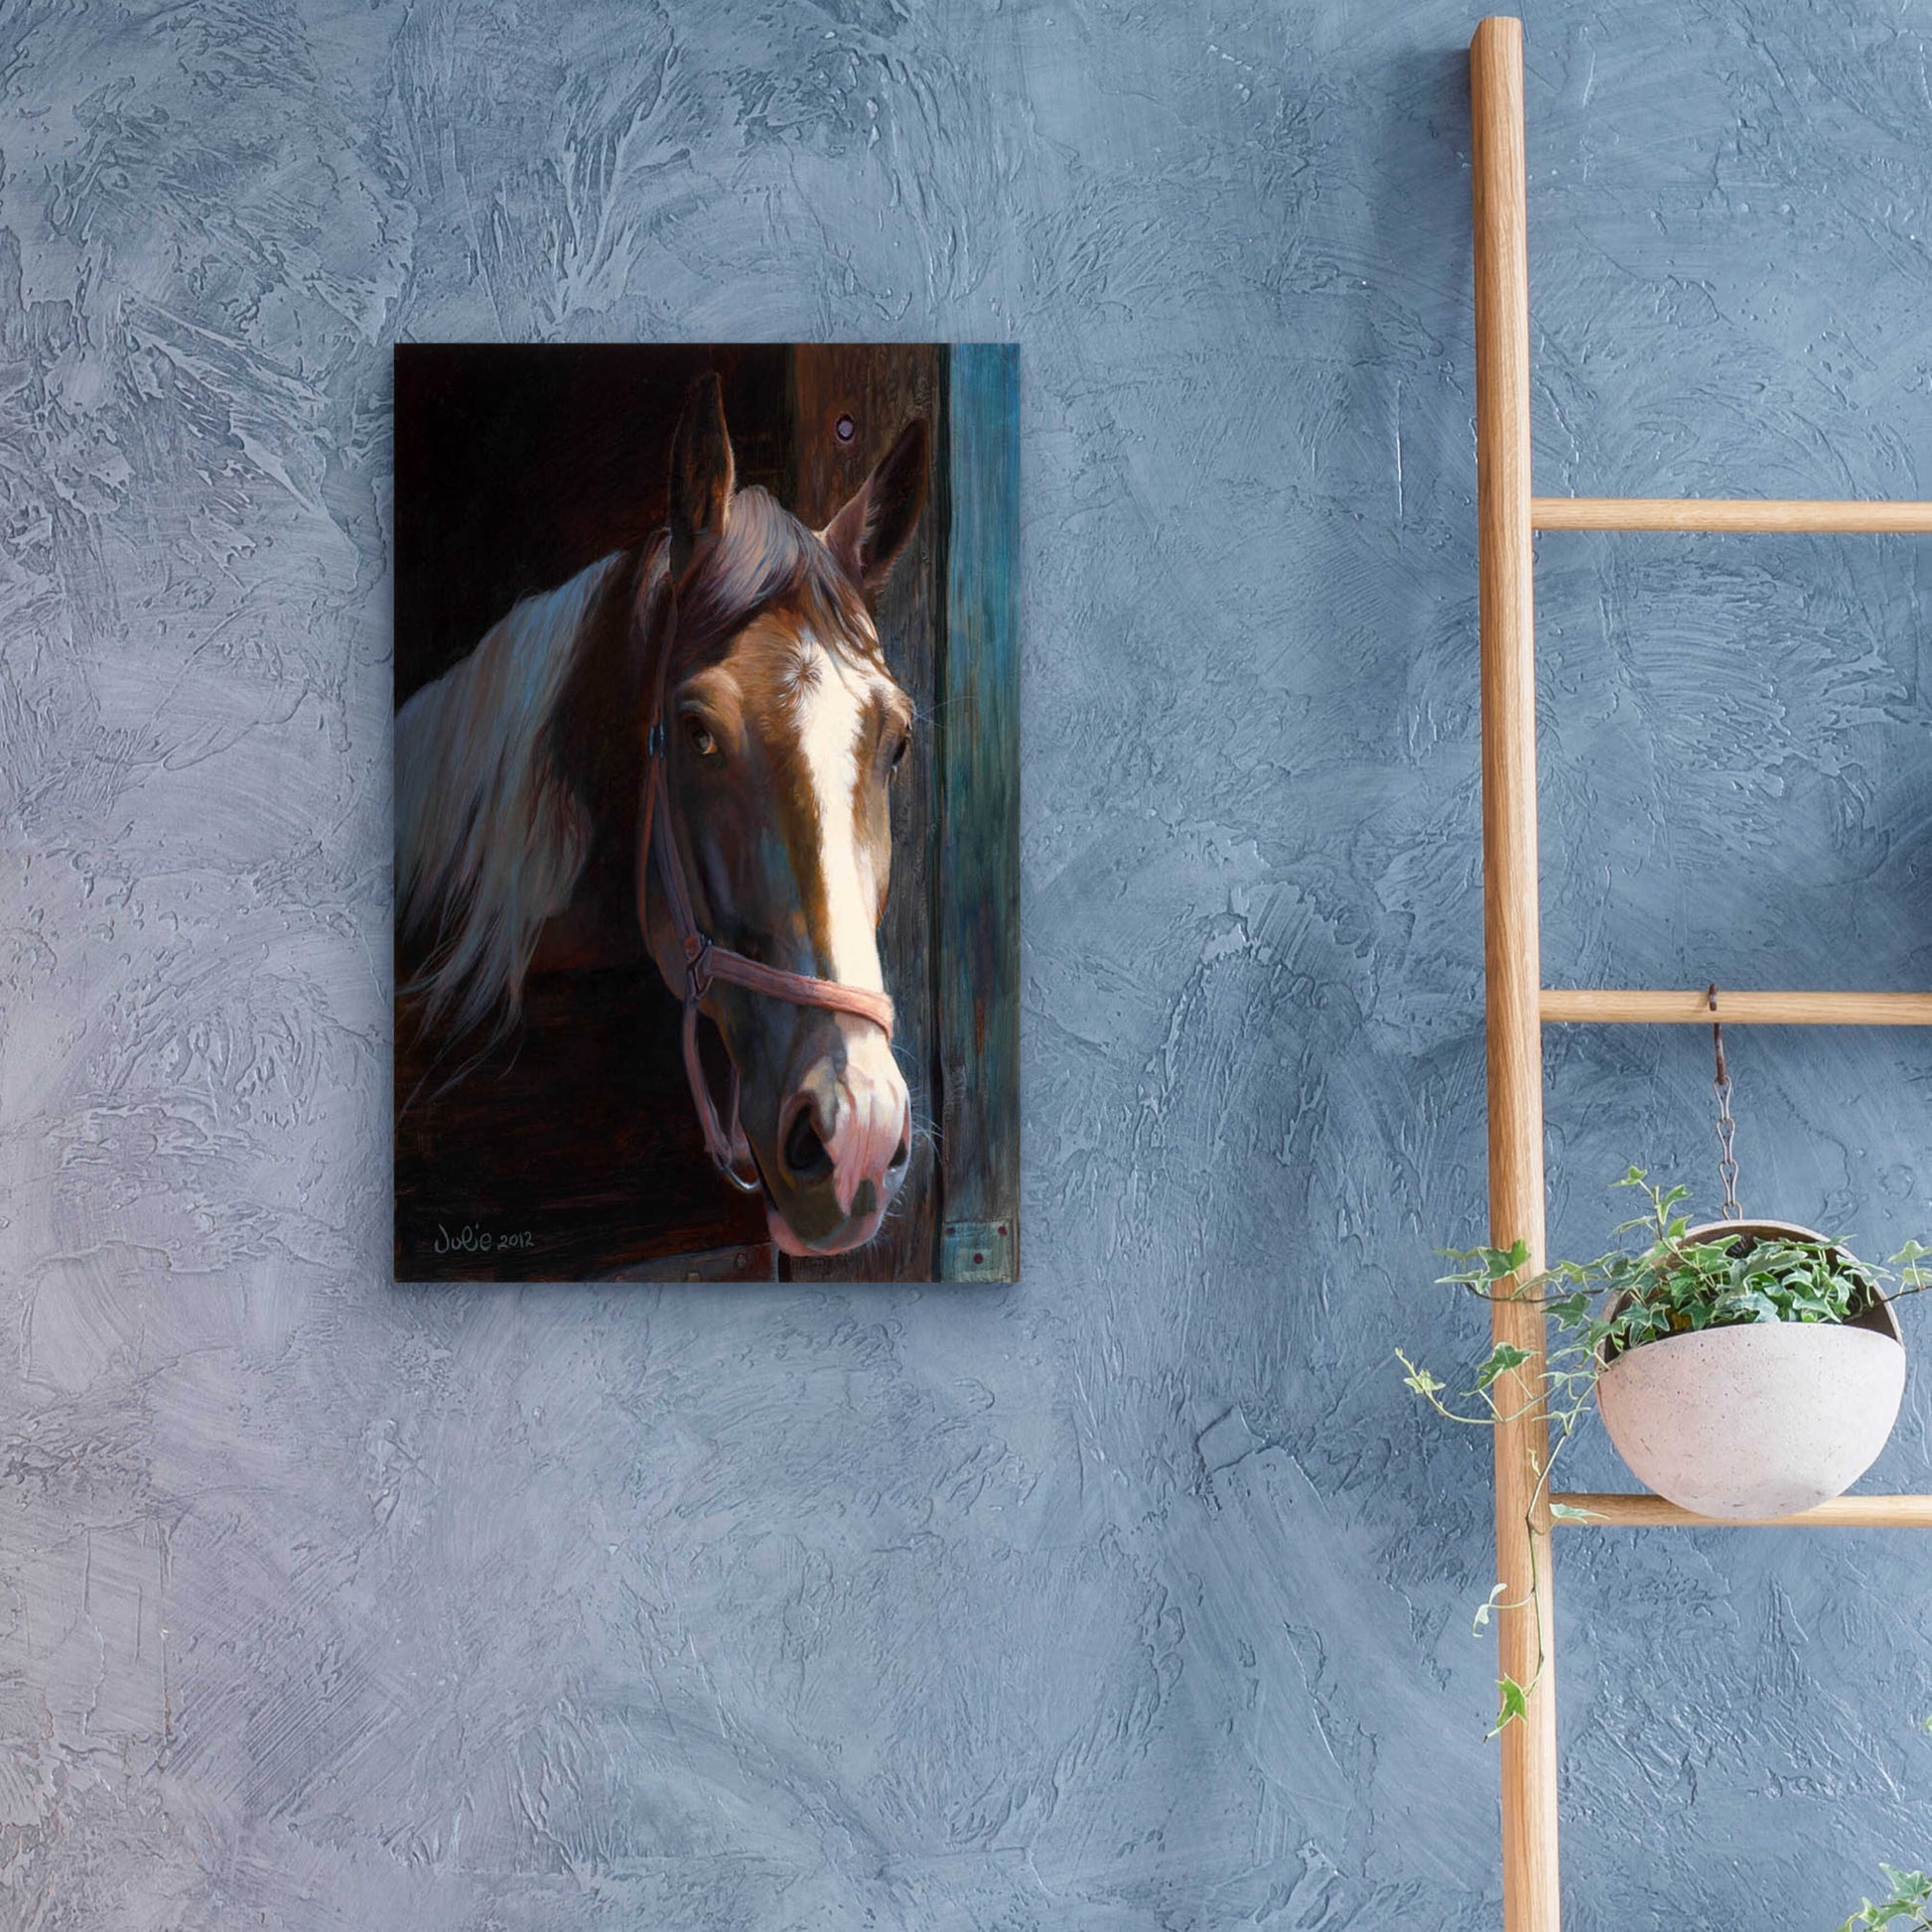 Epic Art 'Dark Horse' by Julie Bel, Acrylic Glass Wall Art,16x24